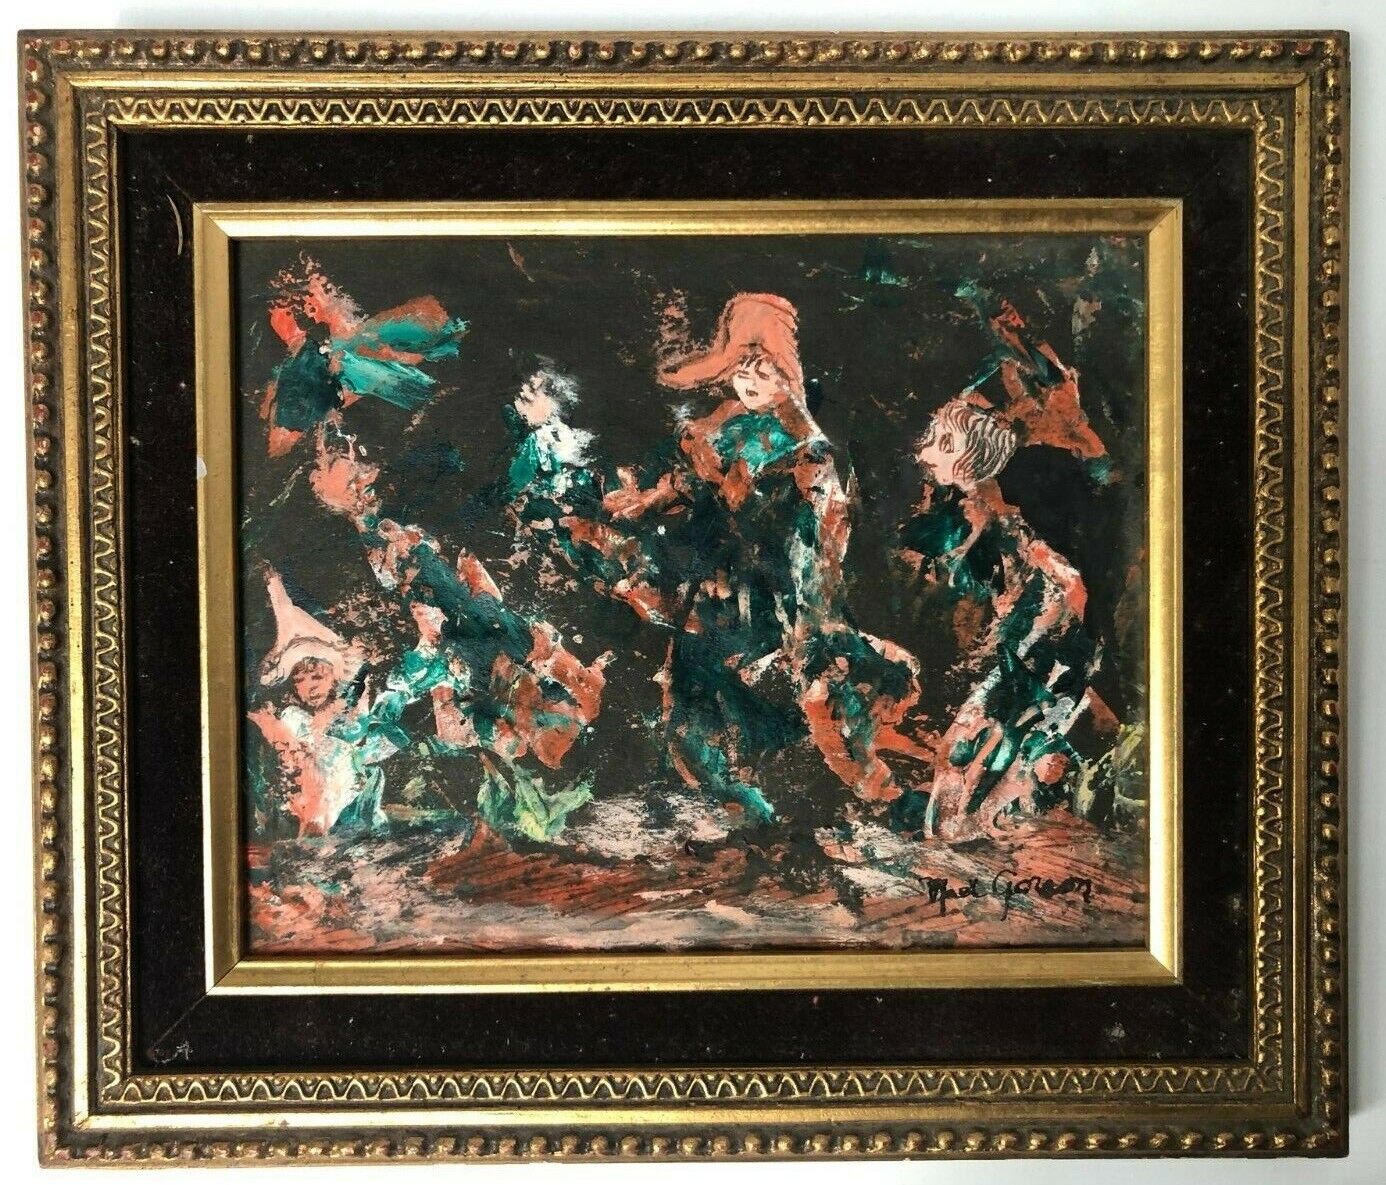 Unique Mid Century Stylized Painting Original Framed SIGNED WYPRZEDAŻ, nowość